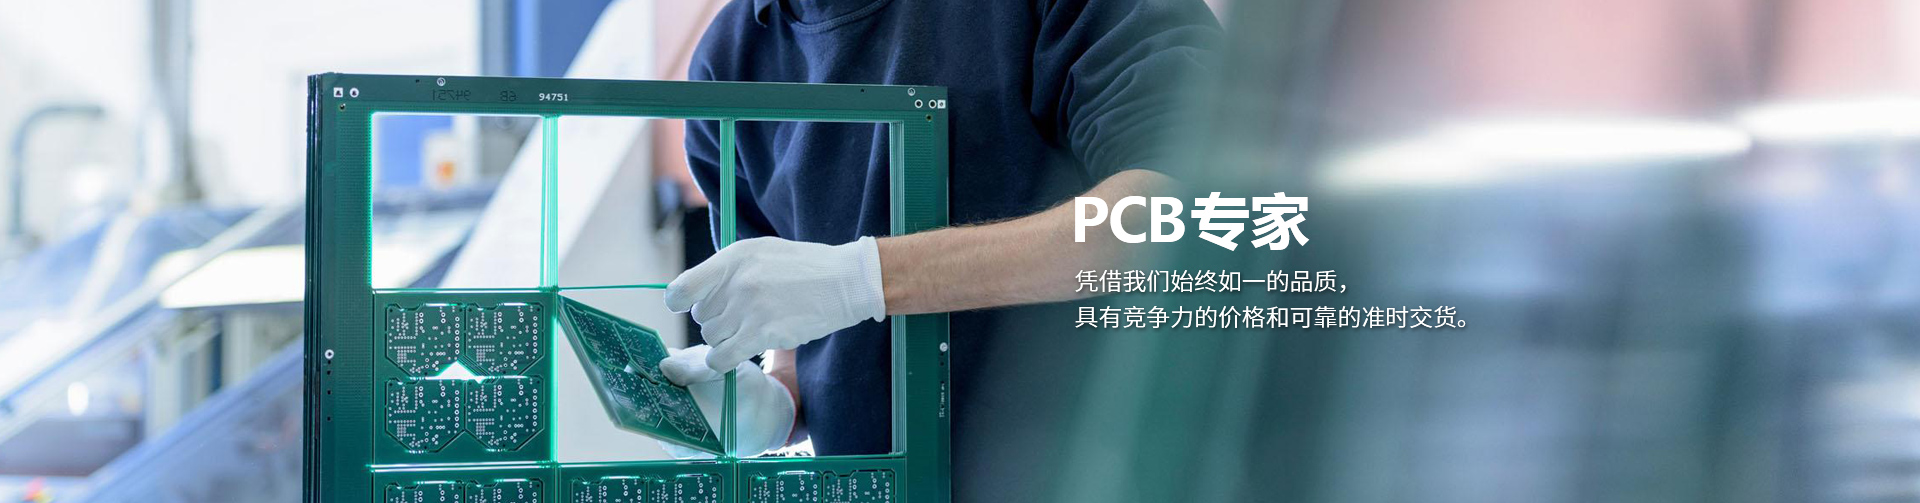 pcb manufactory